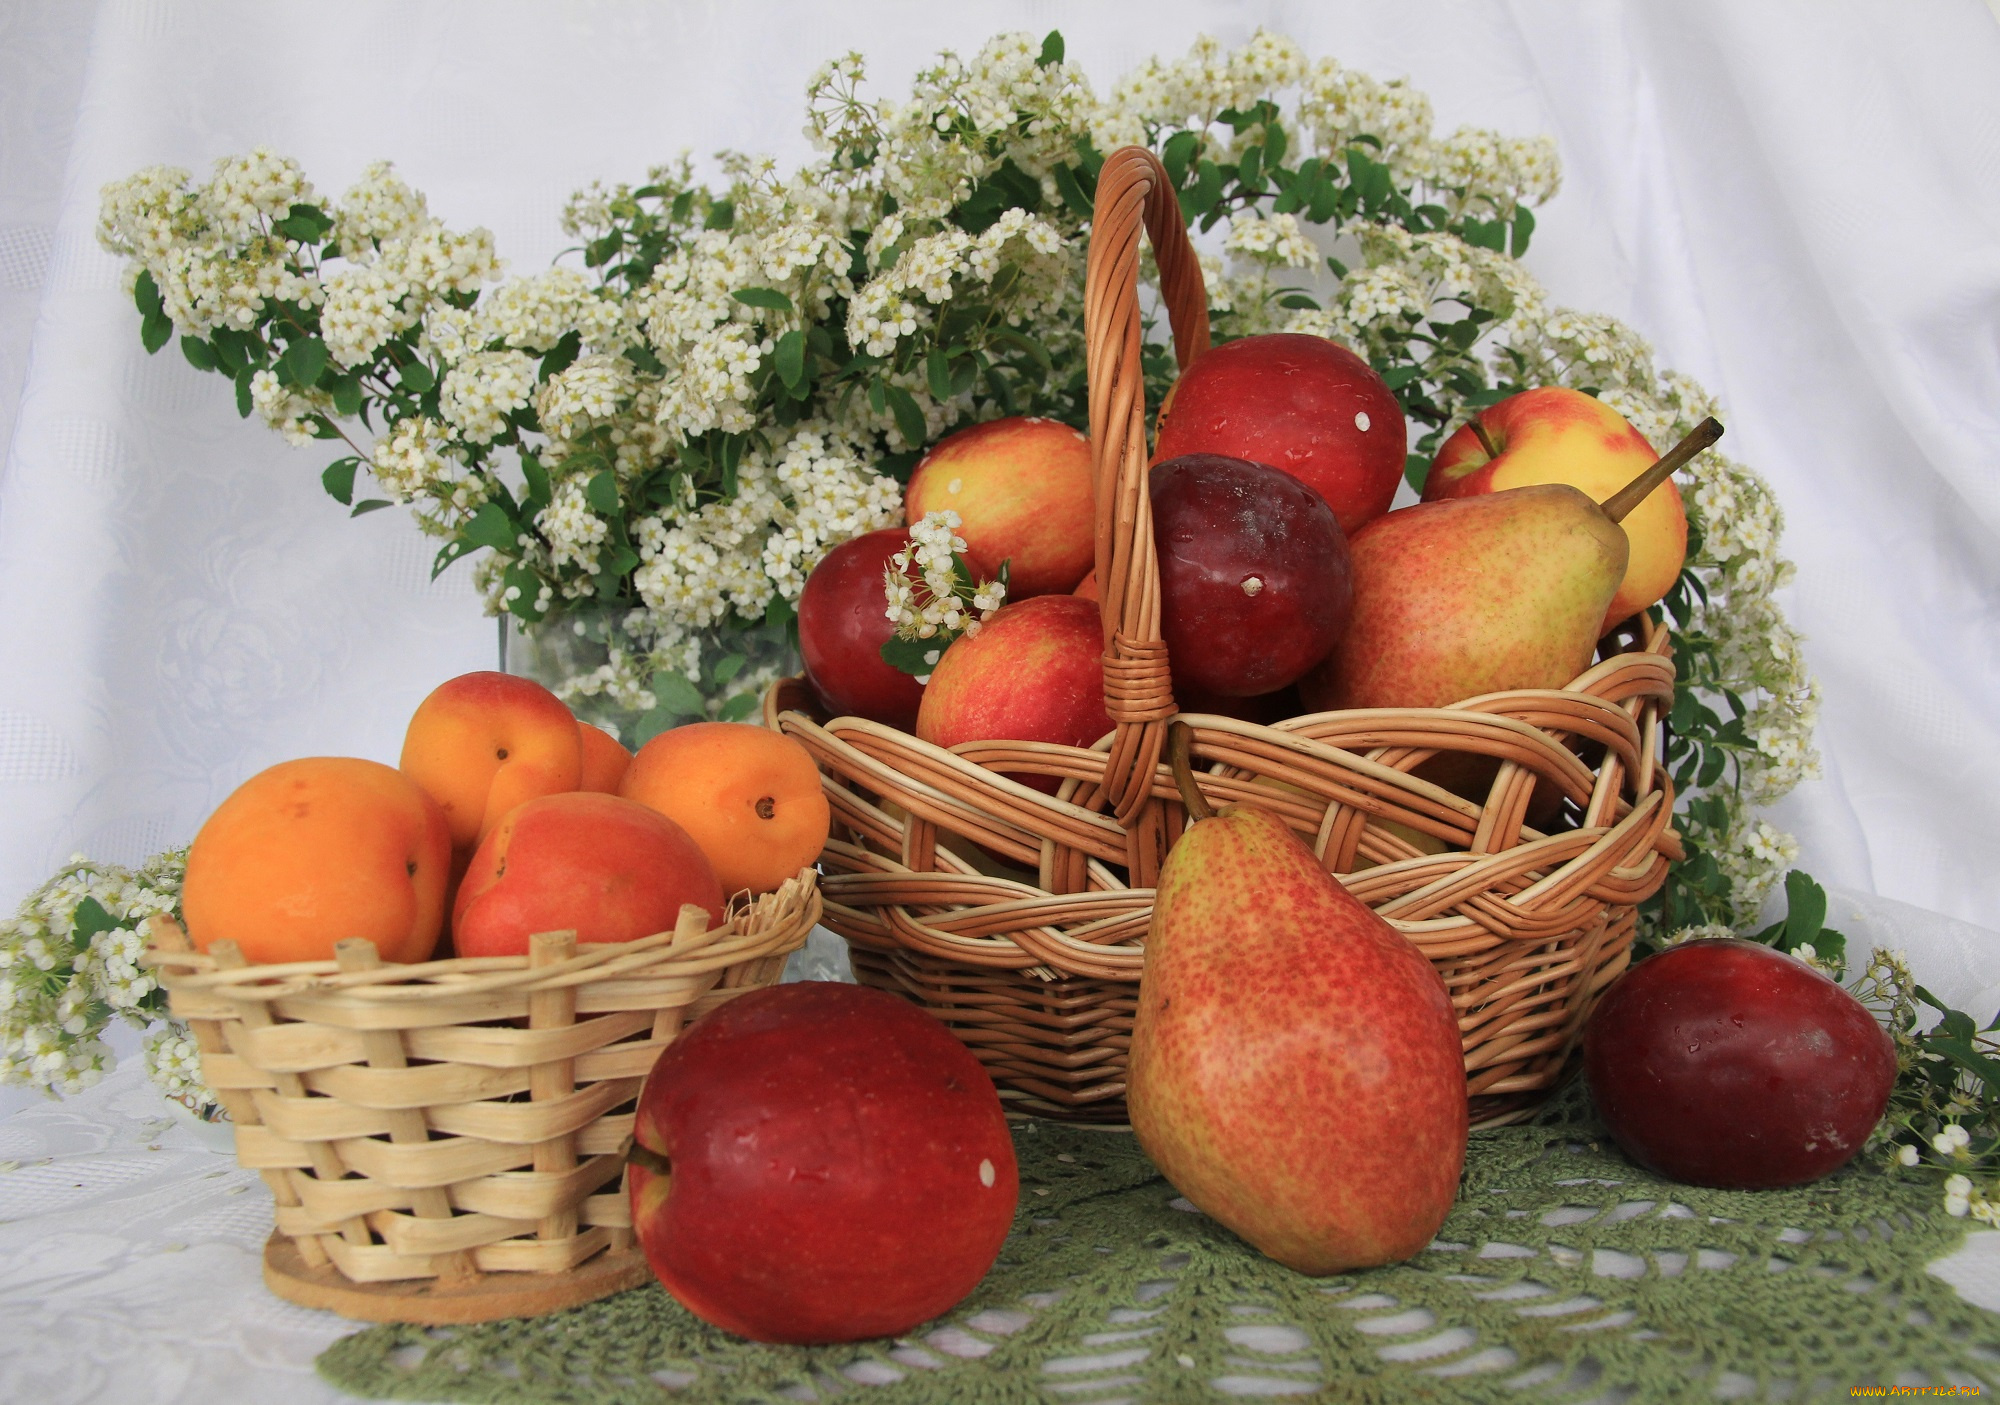 еда, фрукты, , ягоды, спирея, корзина, клетчатка, витамины, груши, сливы, польза, яблоки, весна, абрикосы, май, цветы, натюрморт